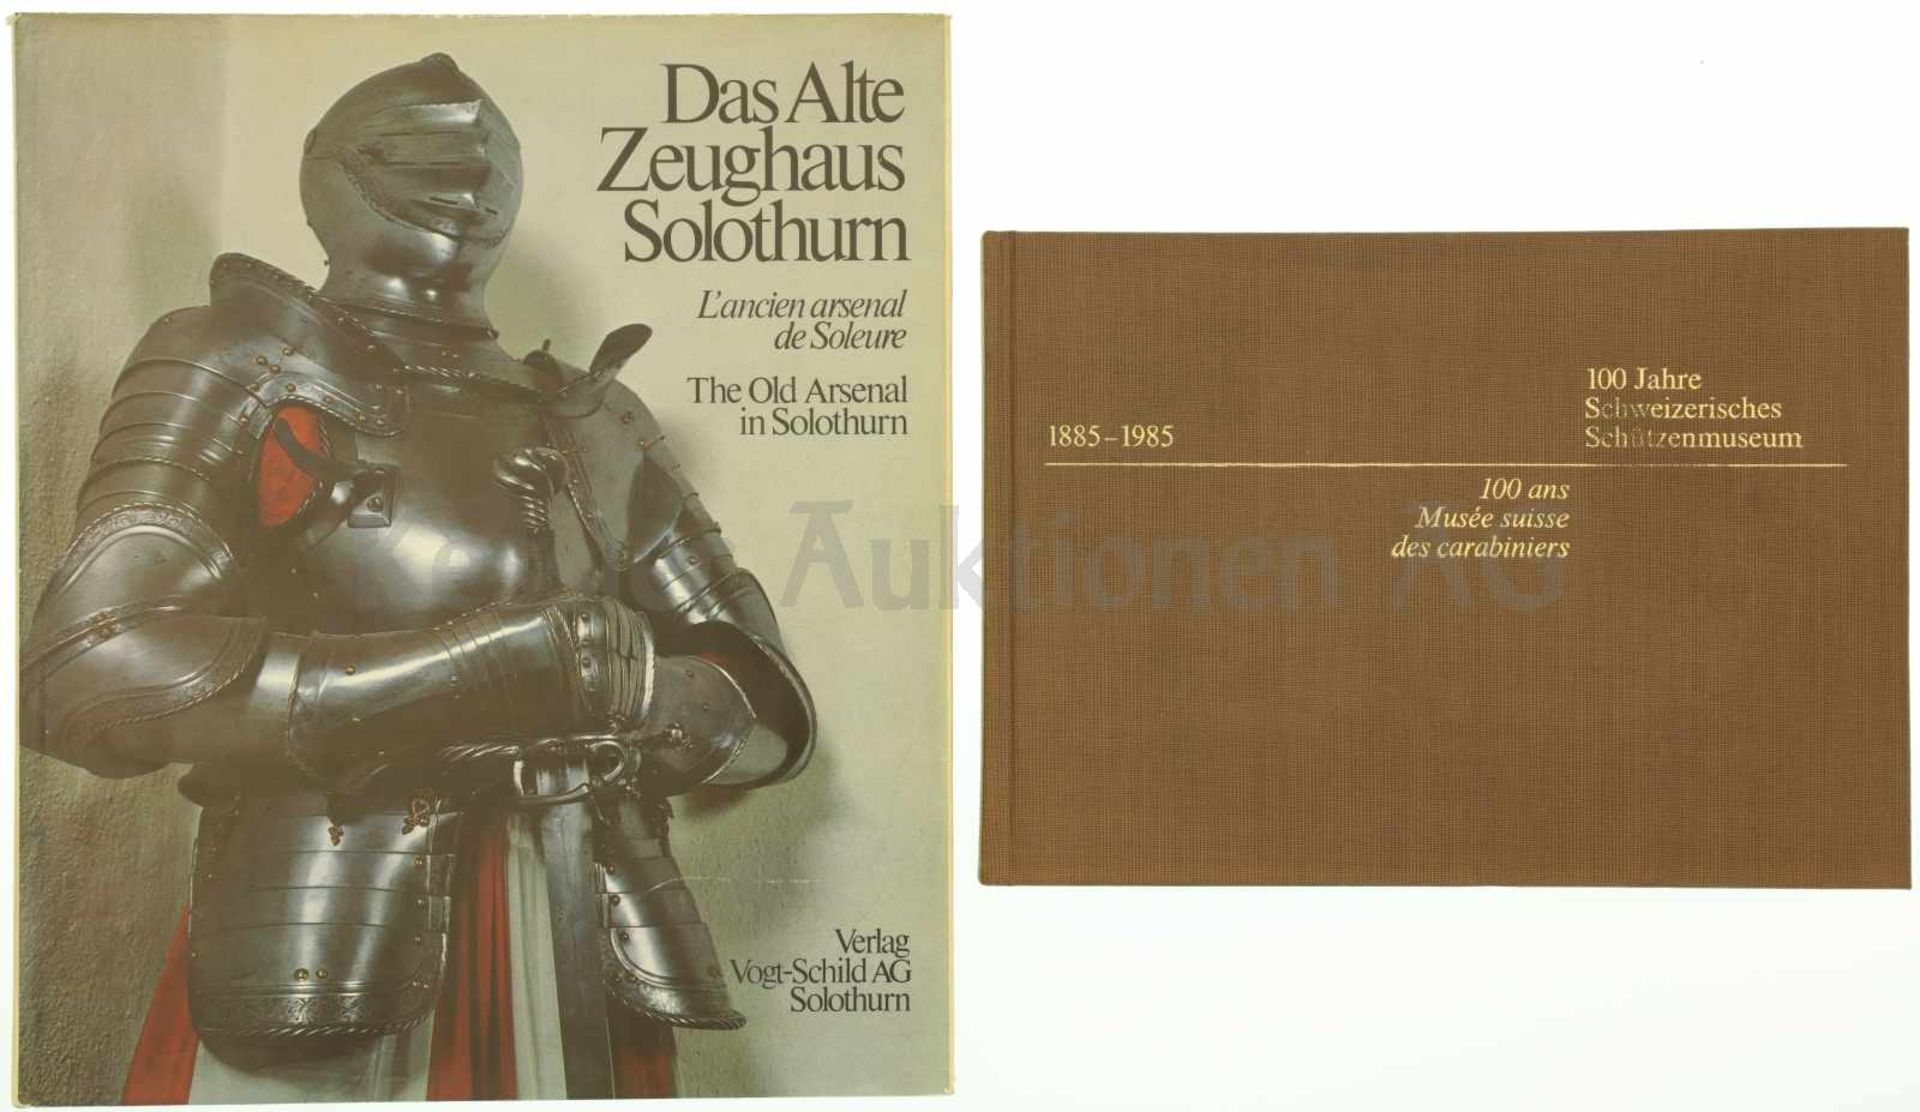 Konvolut von 2 Büchern 1. 100 Jahre Schweizerisches Schützenmuseum Bern, 1885-1985, 2. Das alte